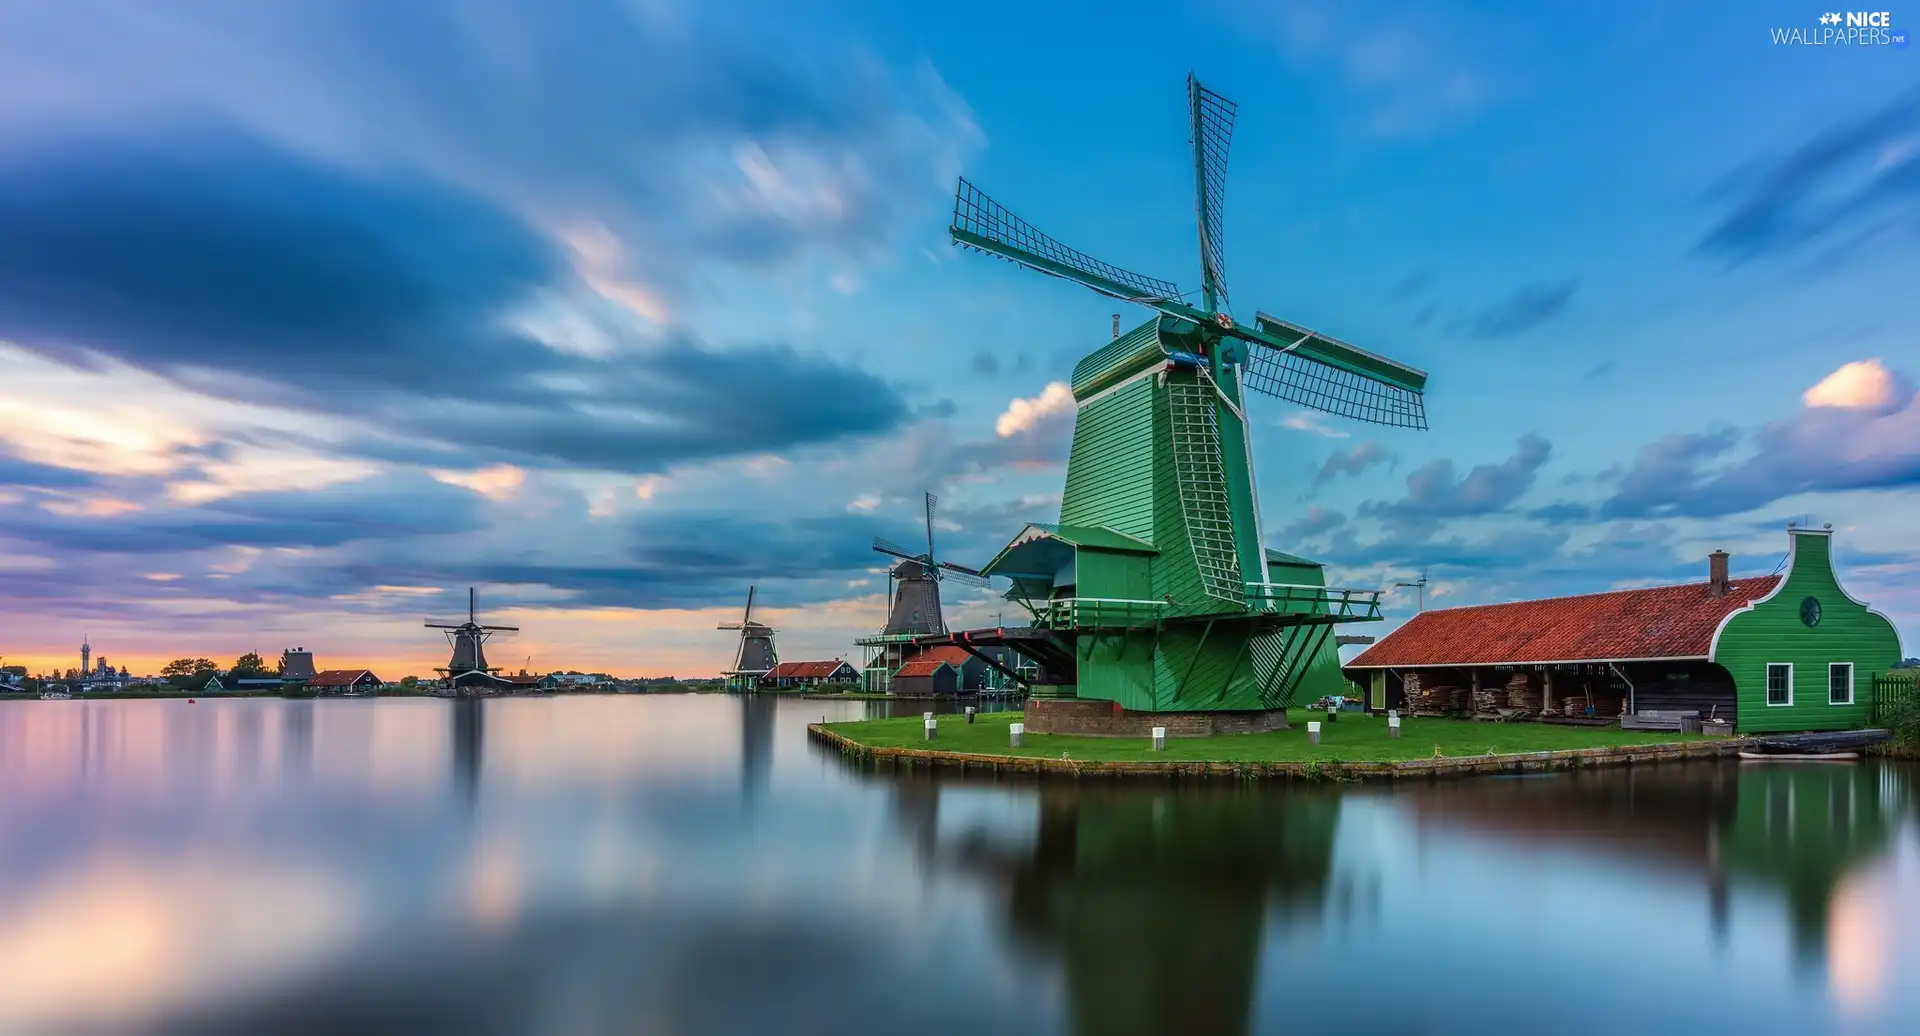 Zaanse Schans, Zaandam, lake, Skansen, Netherlands, Windmills, house